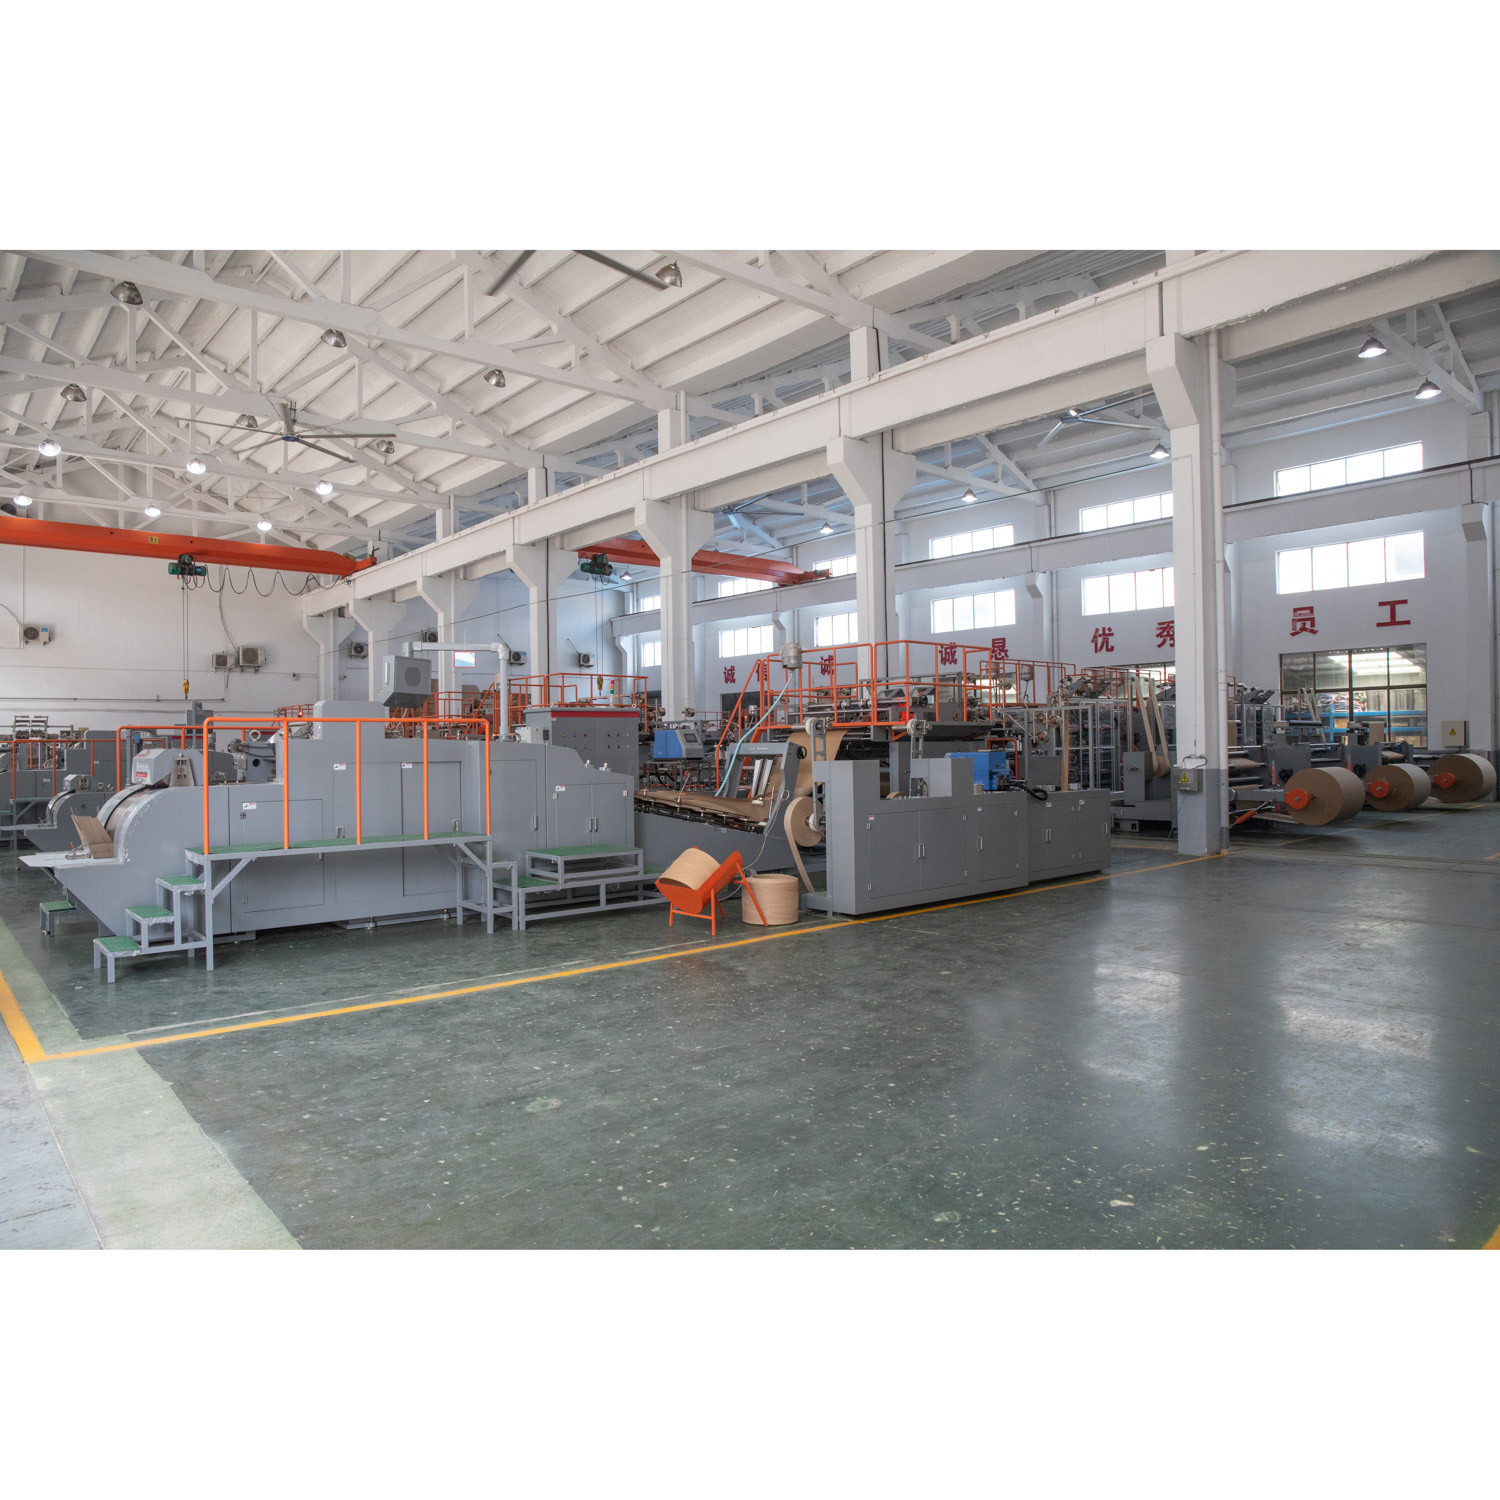 Jiangsu Nanjiang Machinery Co., Ltd.